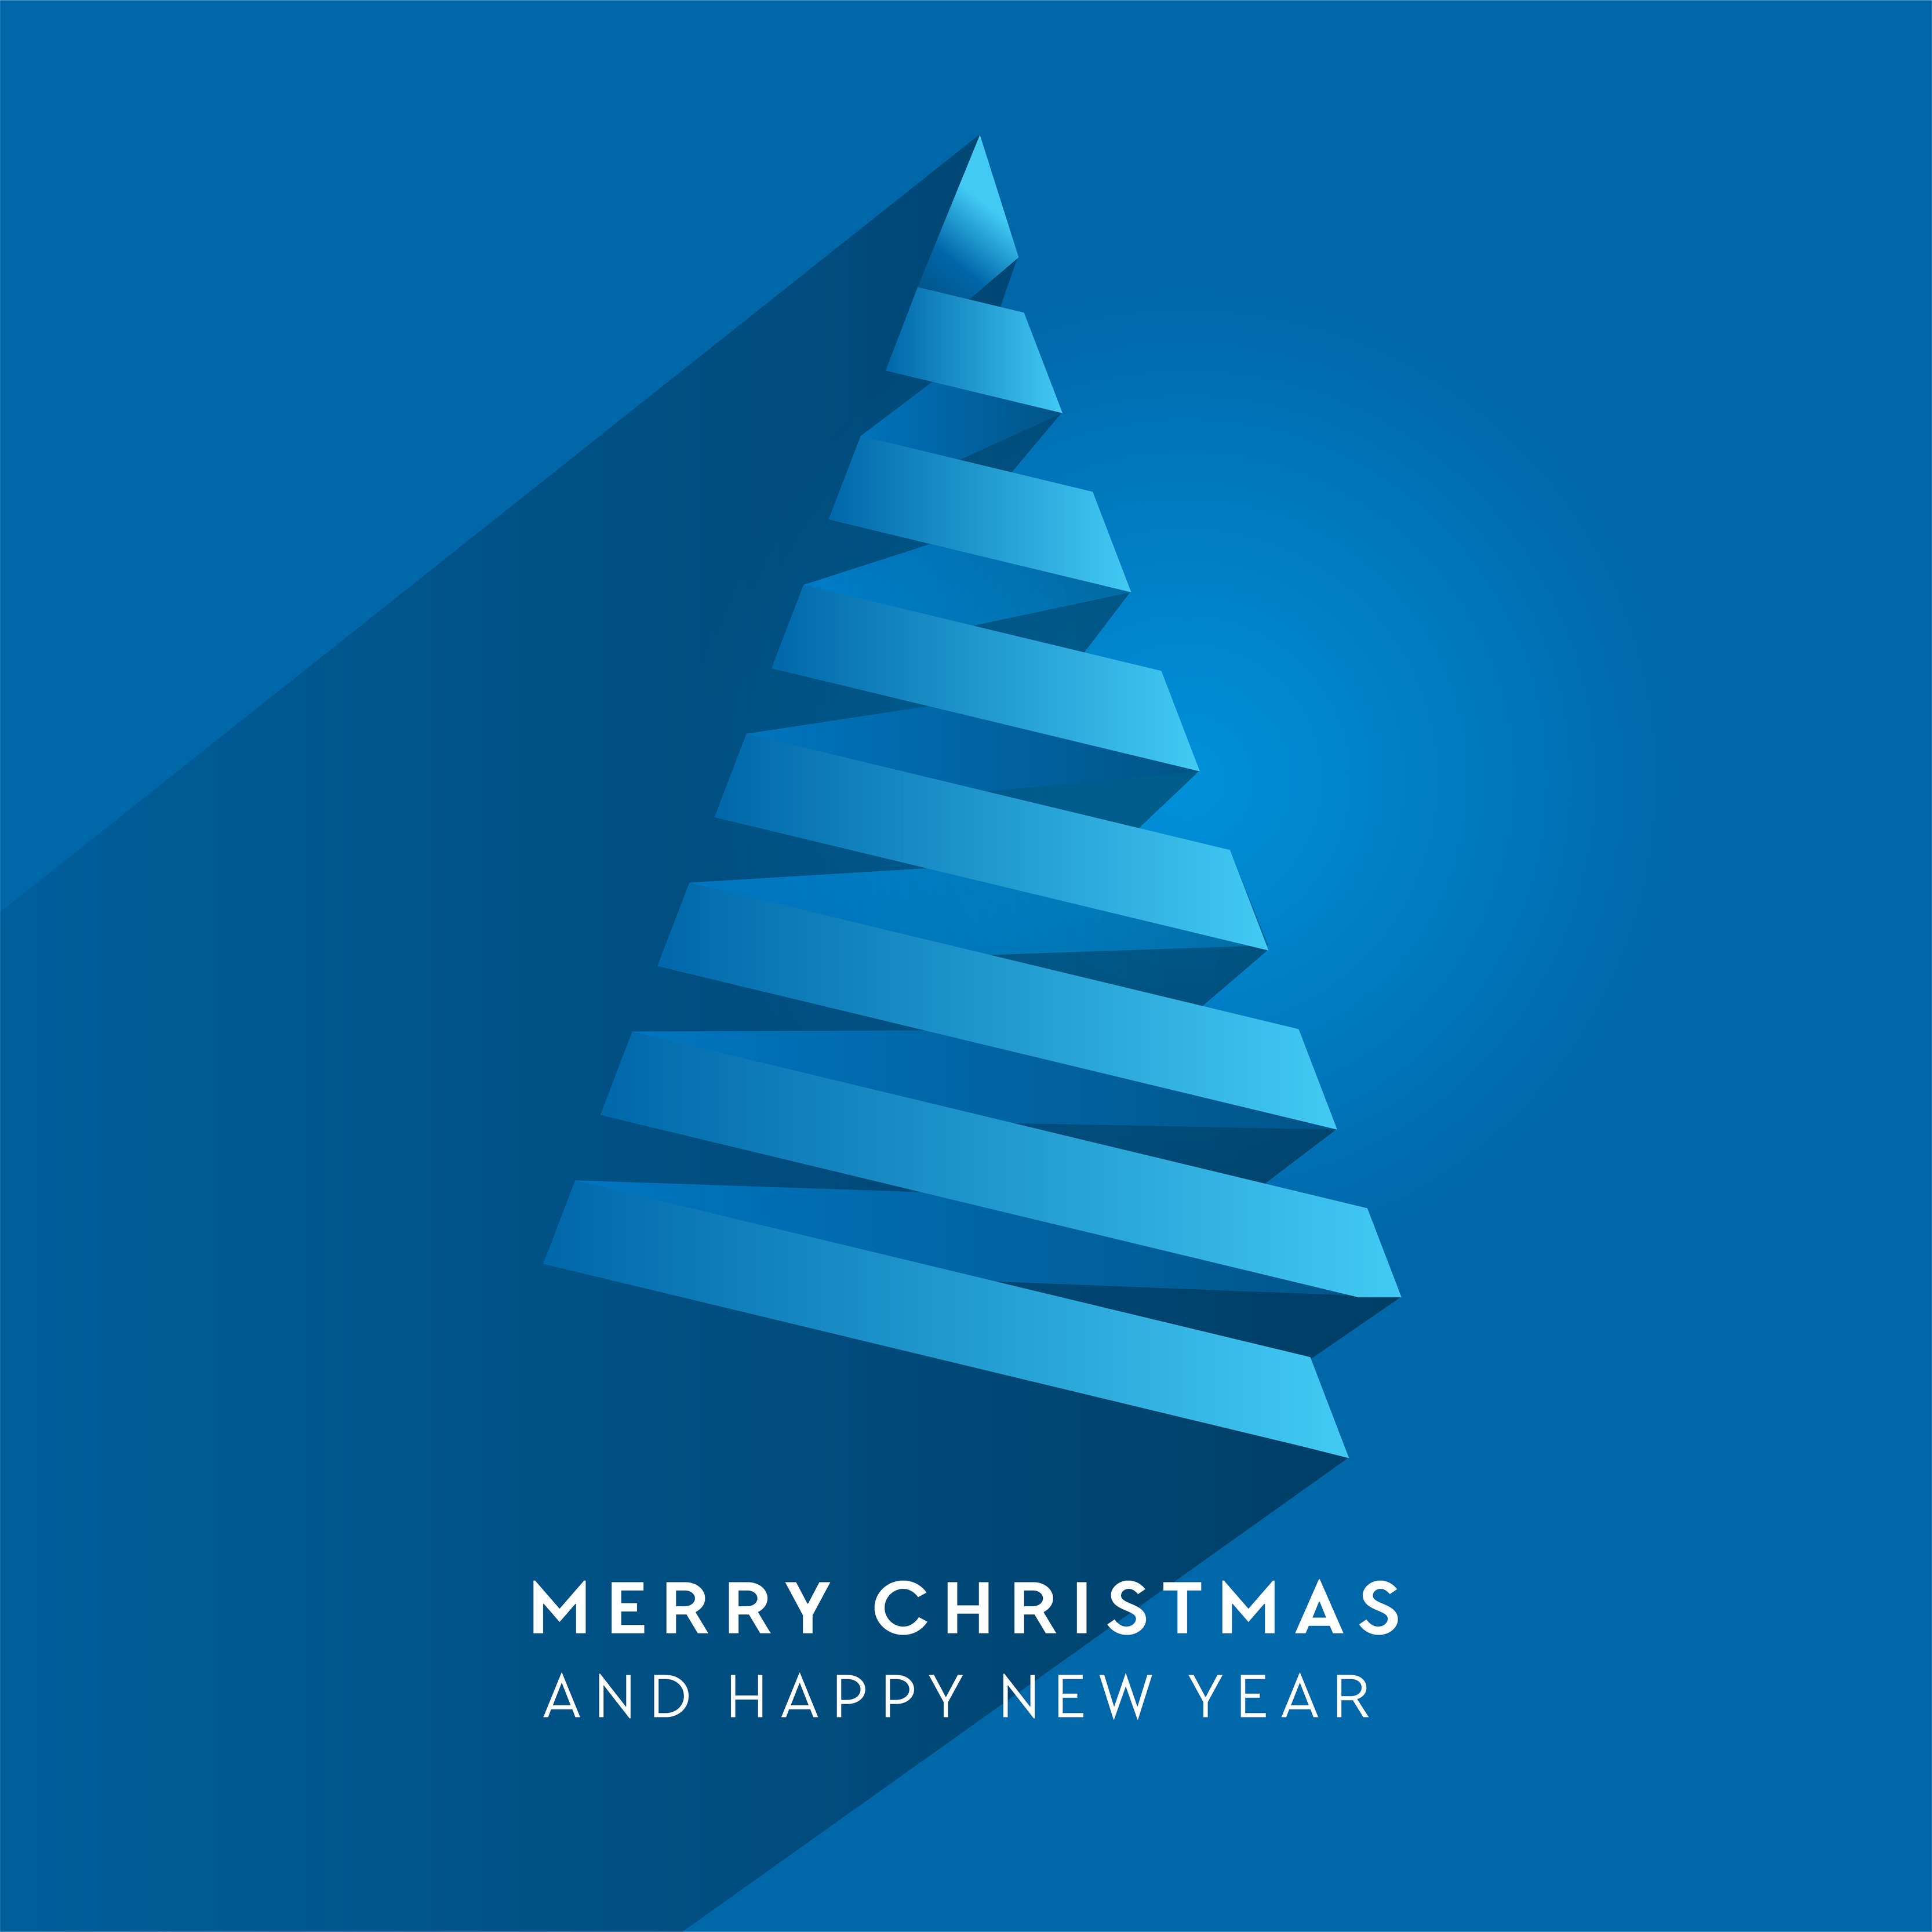 árvore de natal de vetor simples feita de listra de papel - cartão original  de ano novo. volume de papel azul cortado abeto como seta com sombra.  6250394 Vetor no Vecteezy